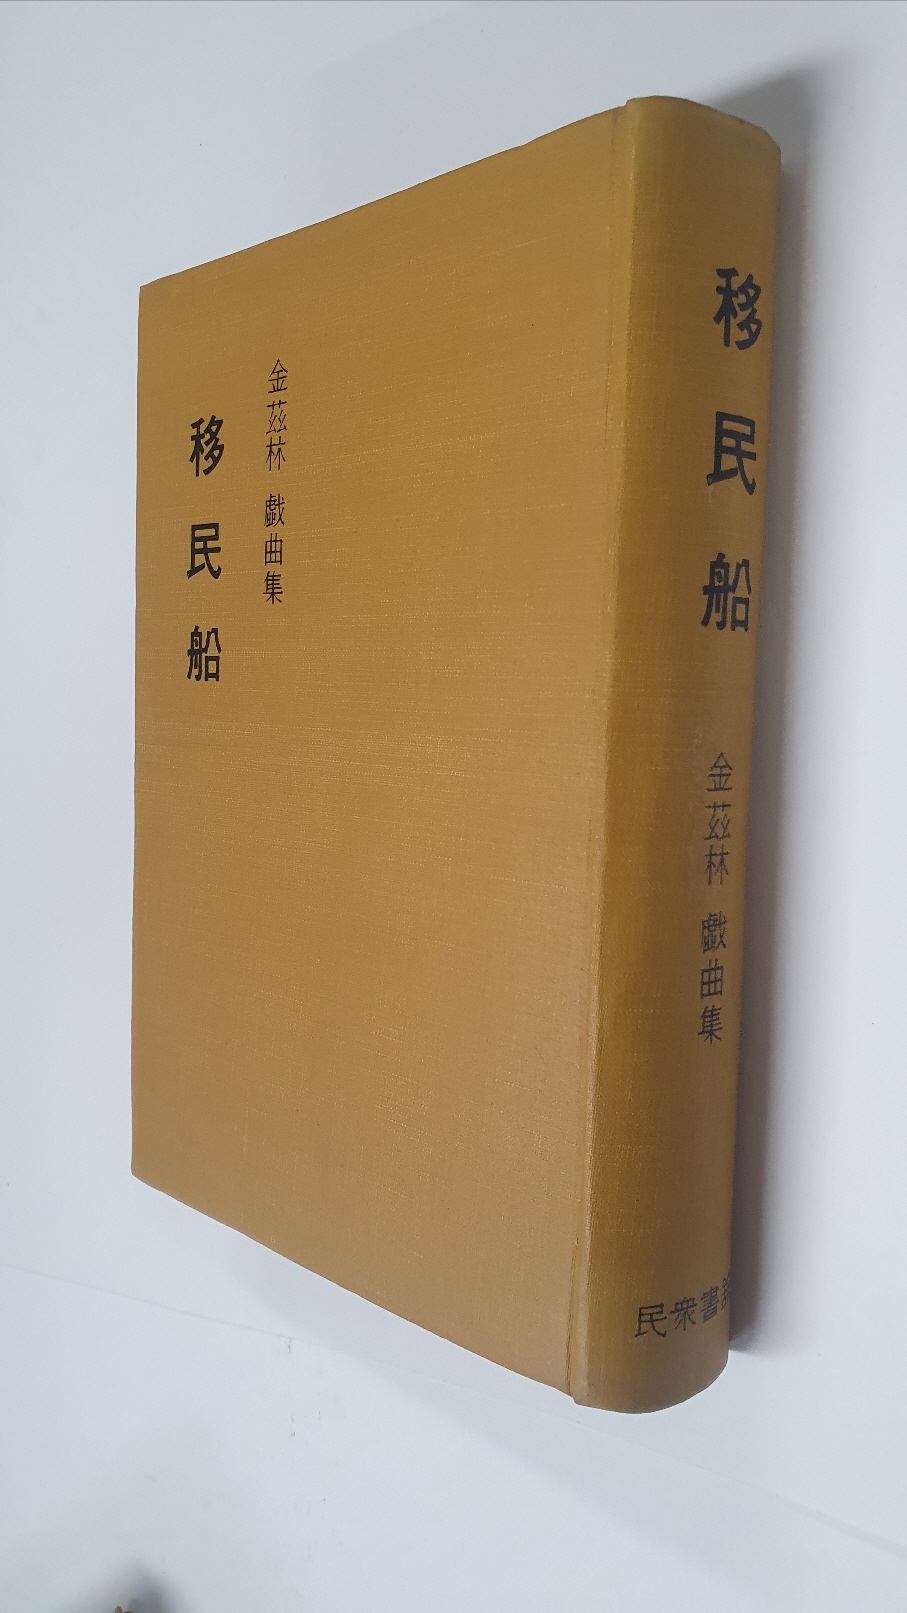 김자림희곡집 [이민선 移民船], 1971 초판 저자서명본